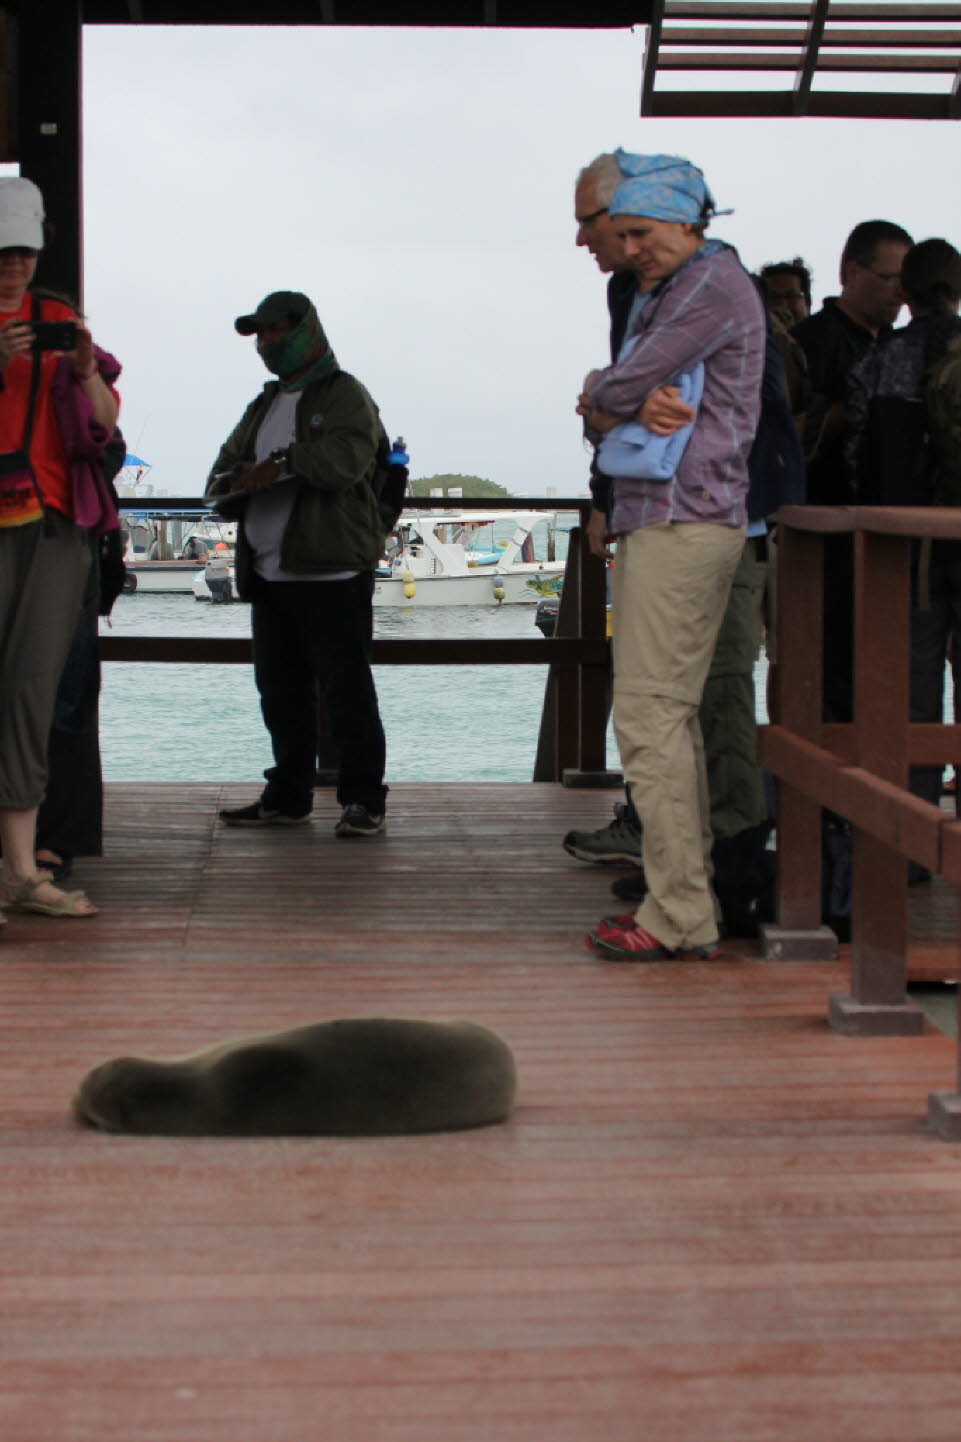 Begrüßung durch Seelöwen: Der Galápagos-Seelöwe gehört zur Familie der Ohrenrobben. Er lebt ausschließlich auf den Galápagosinseln. Eng verwandt mit dem Kalifornischen Seelöwen unterscheidet er sich durch eine längere und spitzere Schnauze. Die stattliche‚